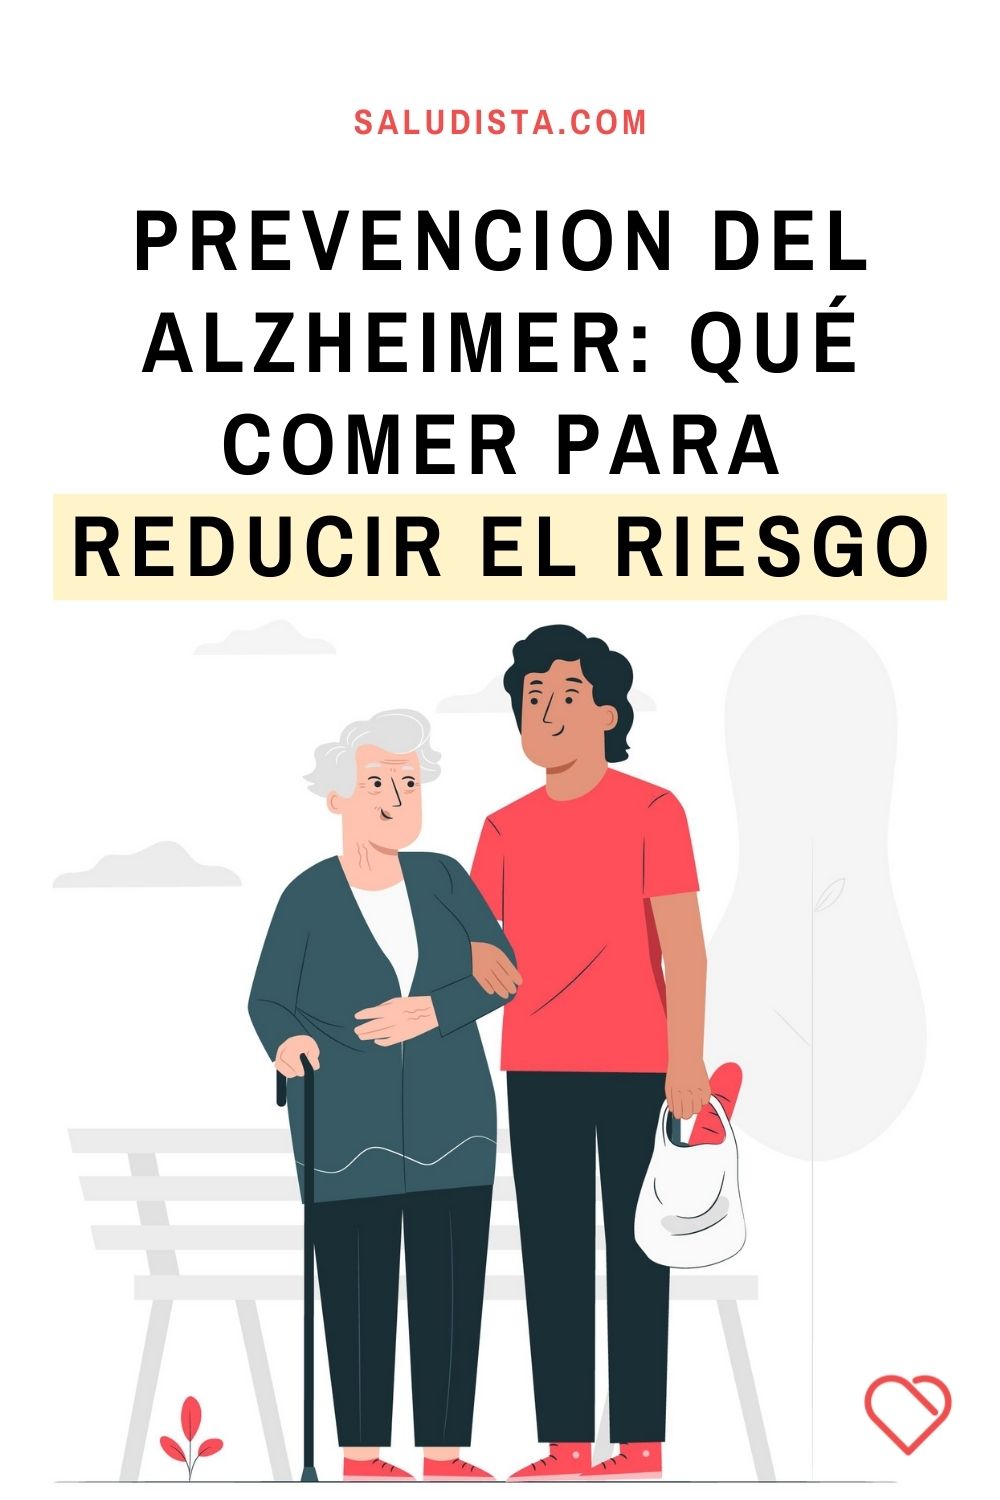 Prevencion del Alzheimer: qué comer para reducir el riesgo de padecer la enfermedad